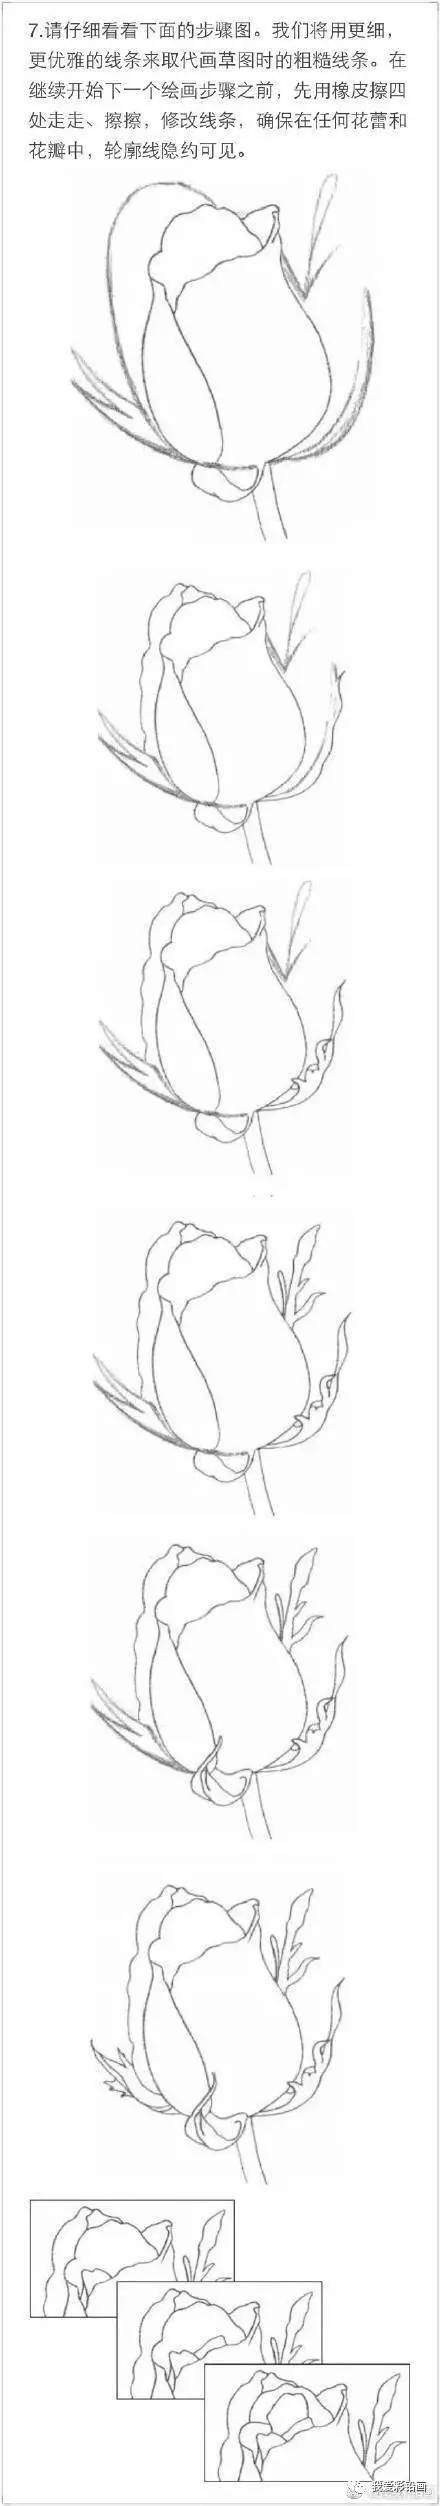 教你如何快速用铅笔画一朵玫瑰花